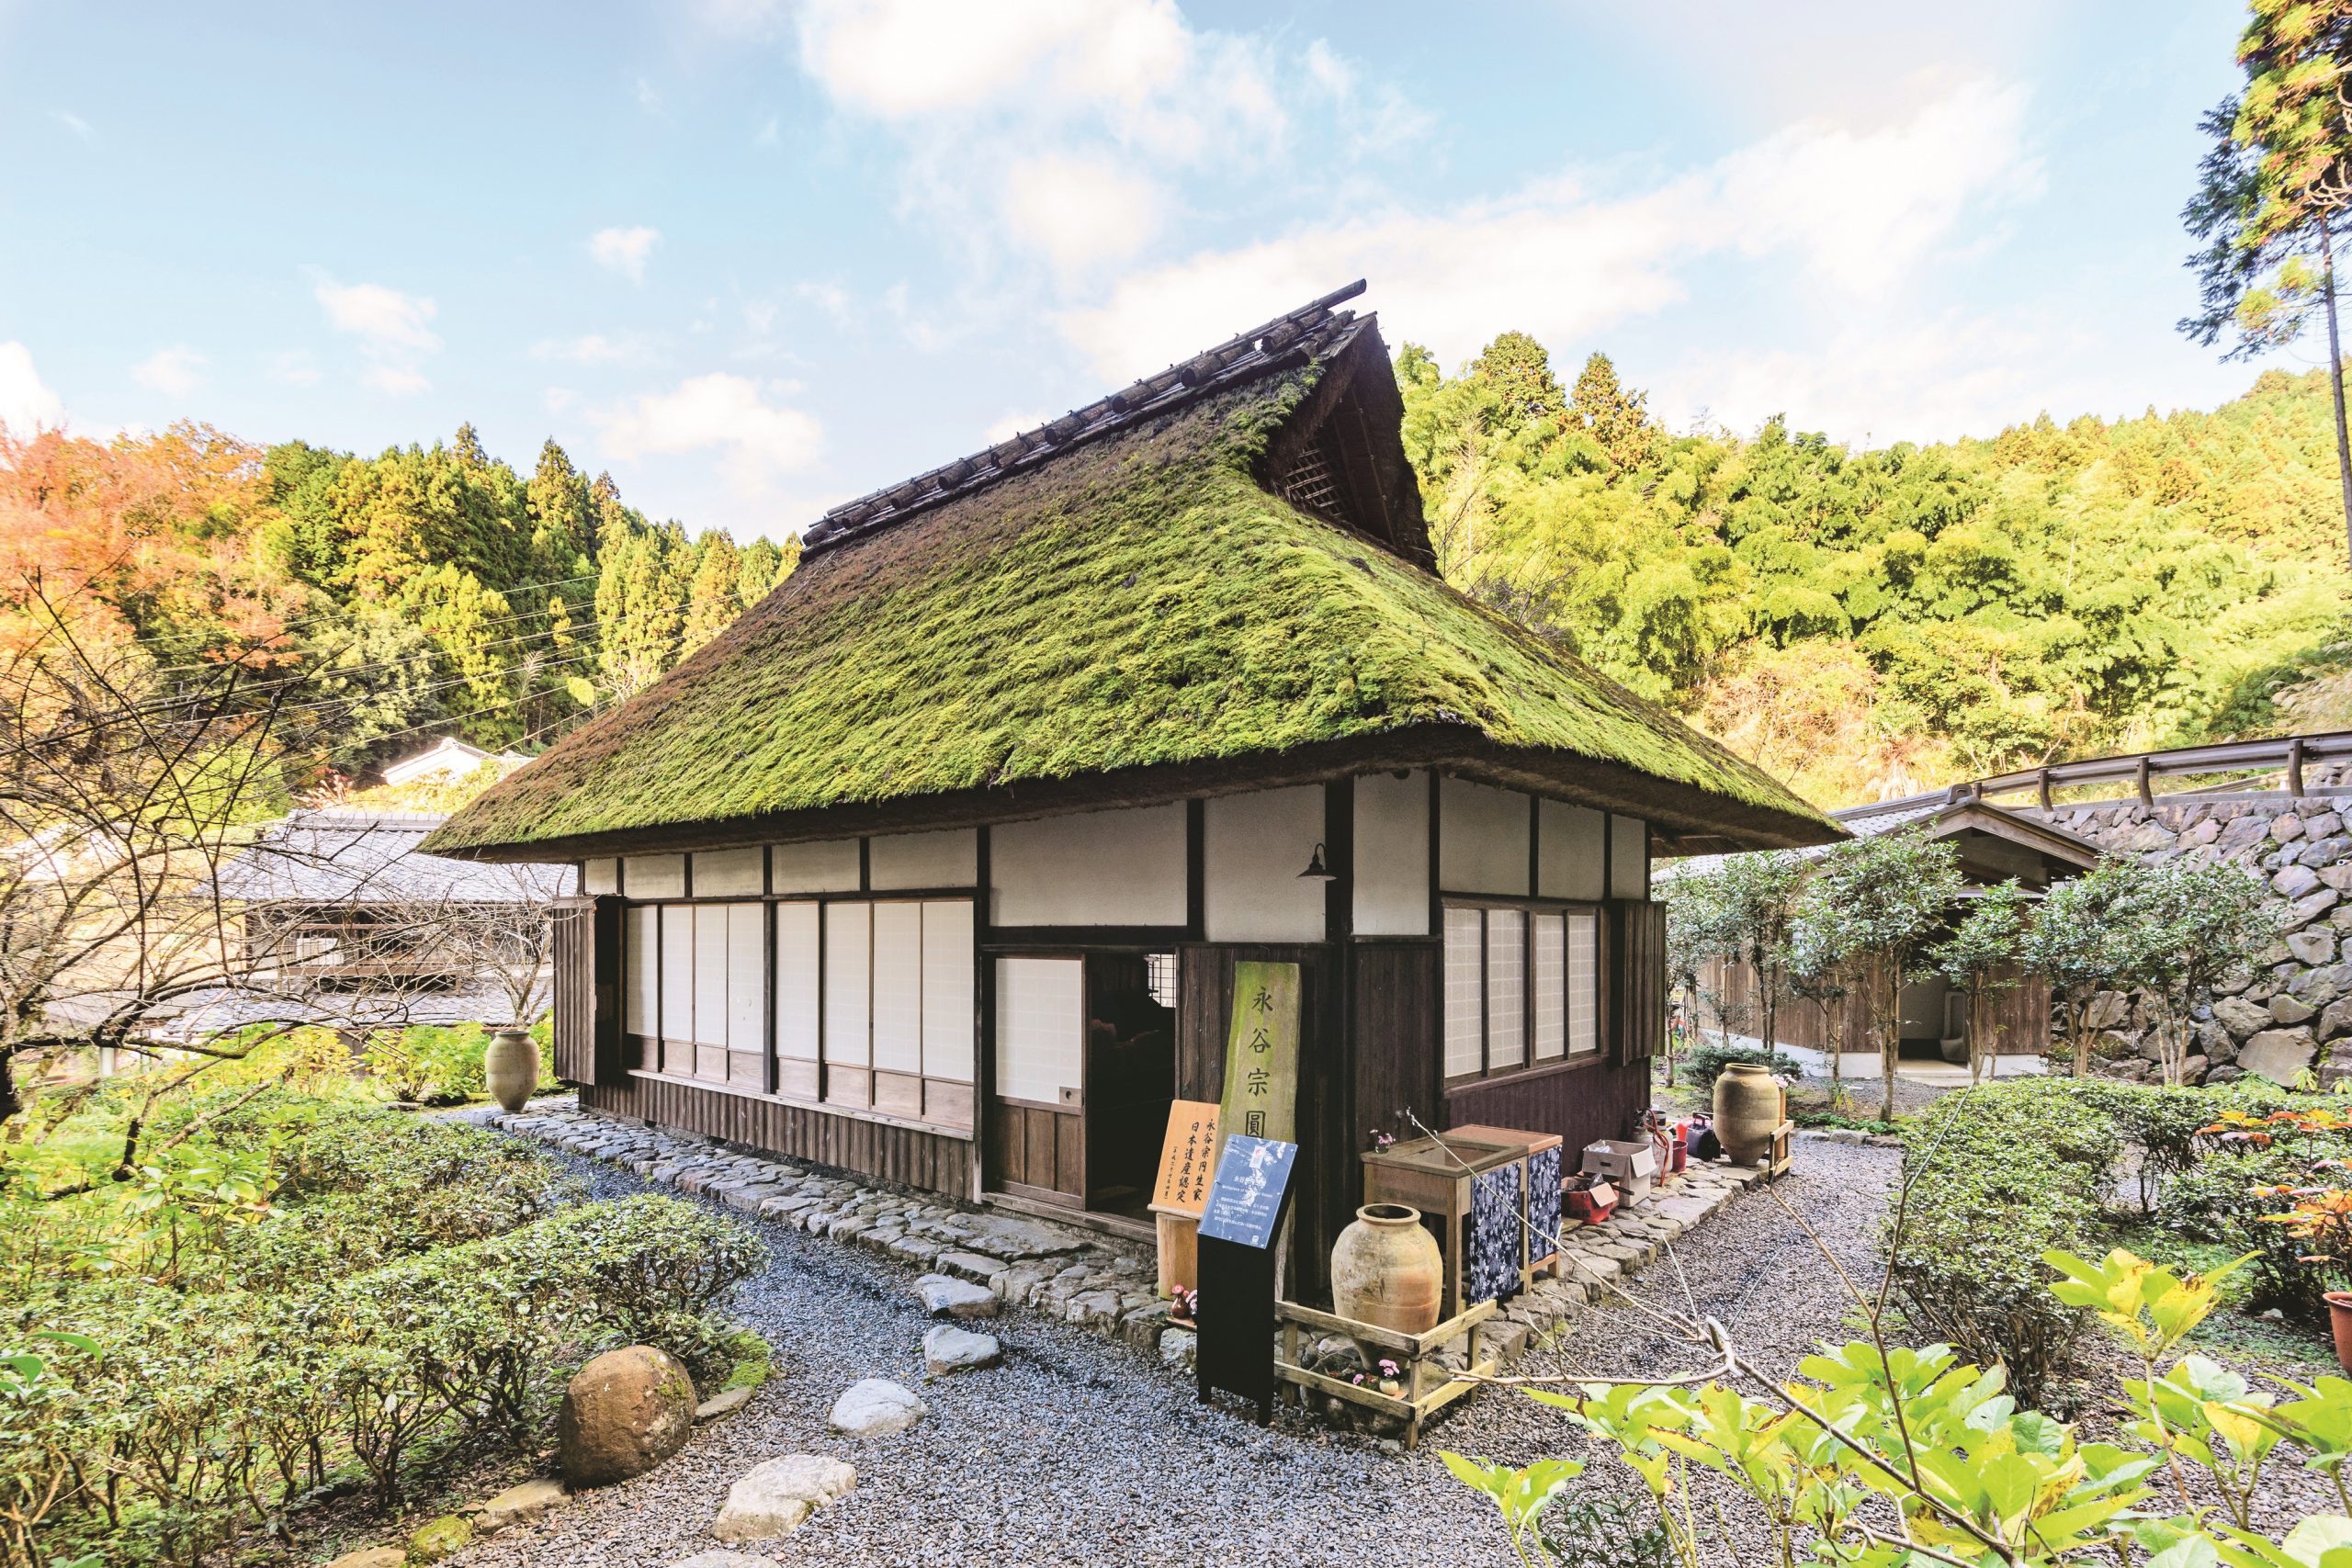 Ujitawara:Birth place of Nagatani Soen